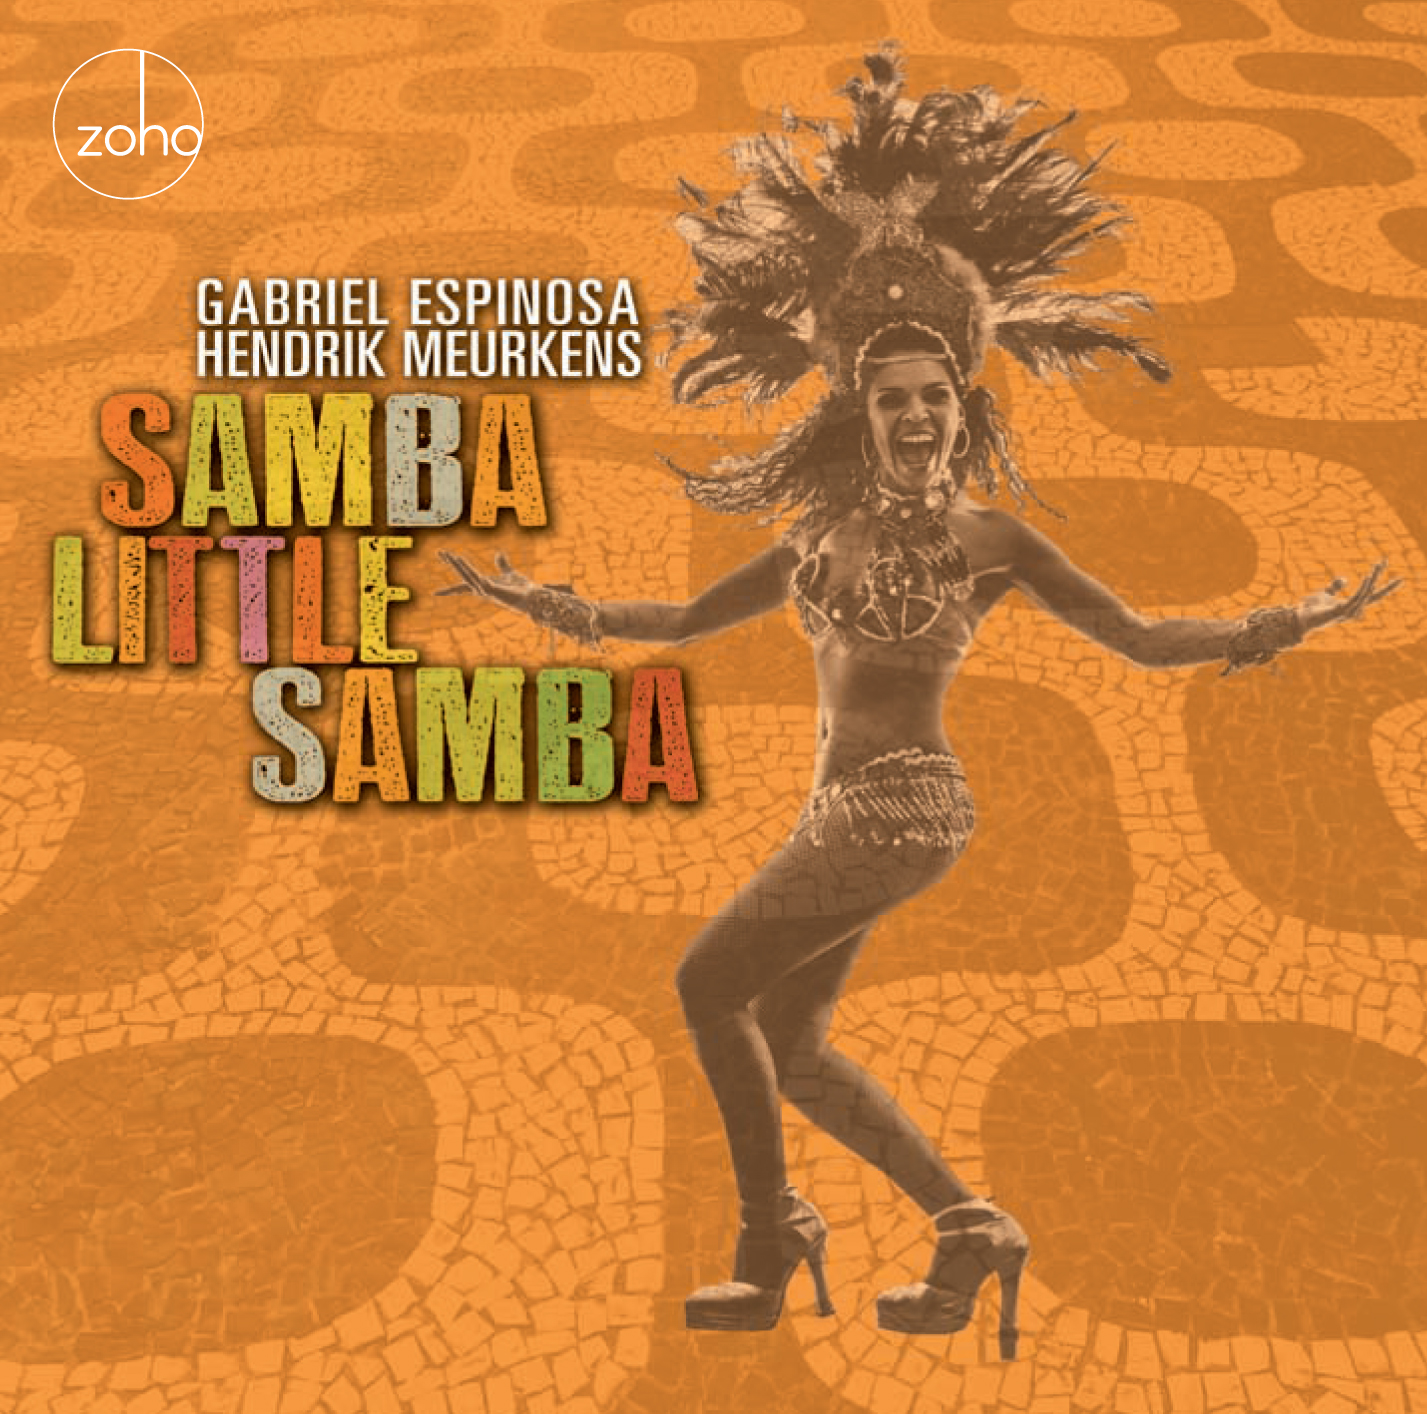 CD release concert for “Samba Little Samba”